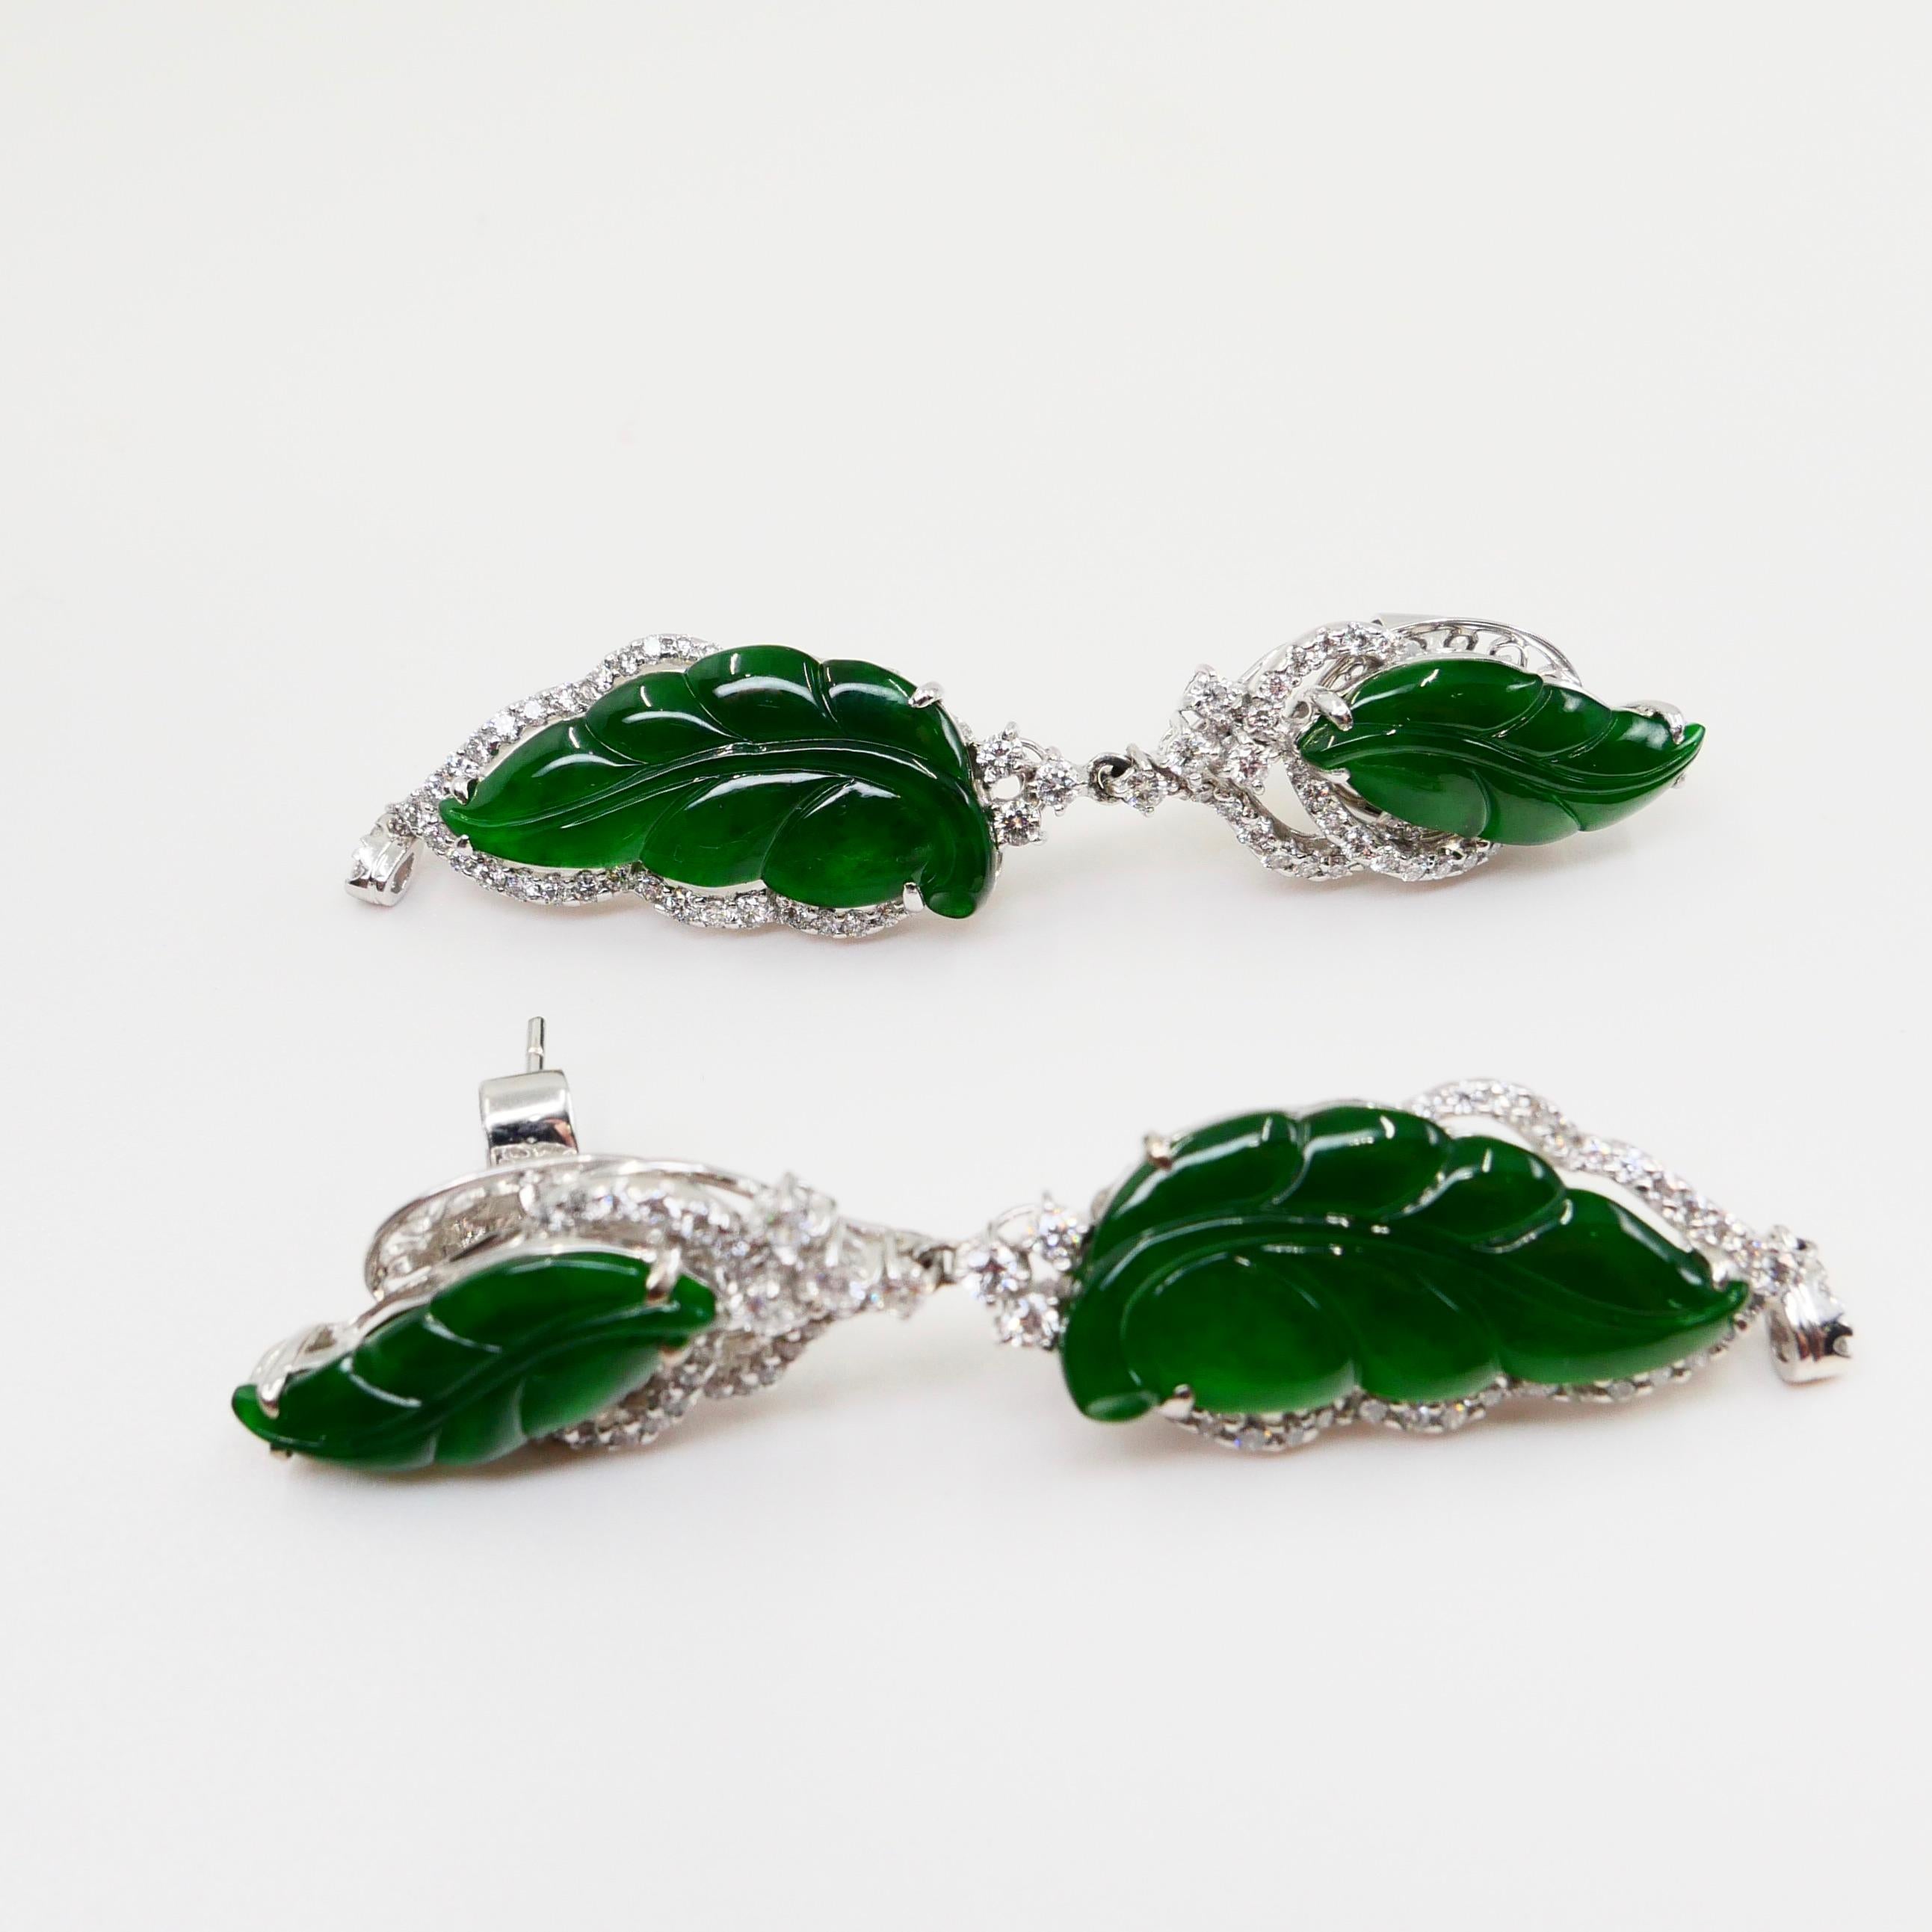 Vintage Certified Jadeite Jade and Diamond Drop Earrings, Intense Imperial Green 6